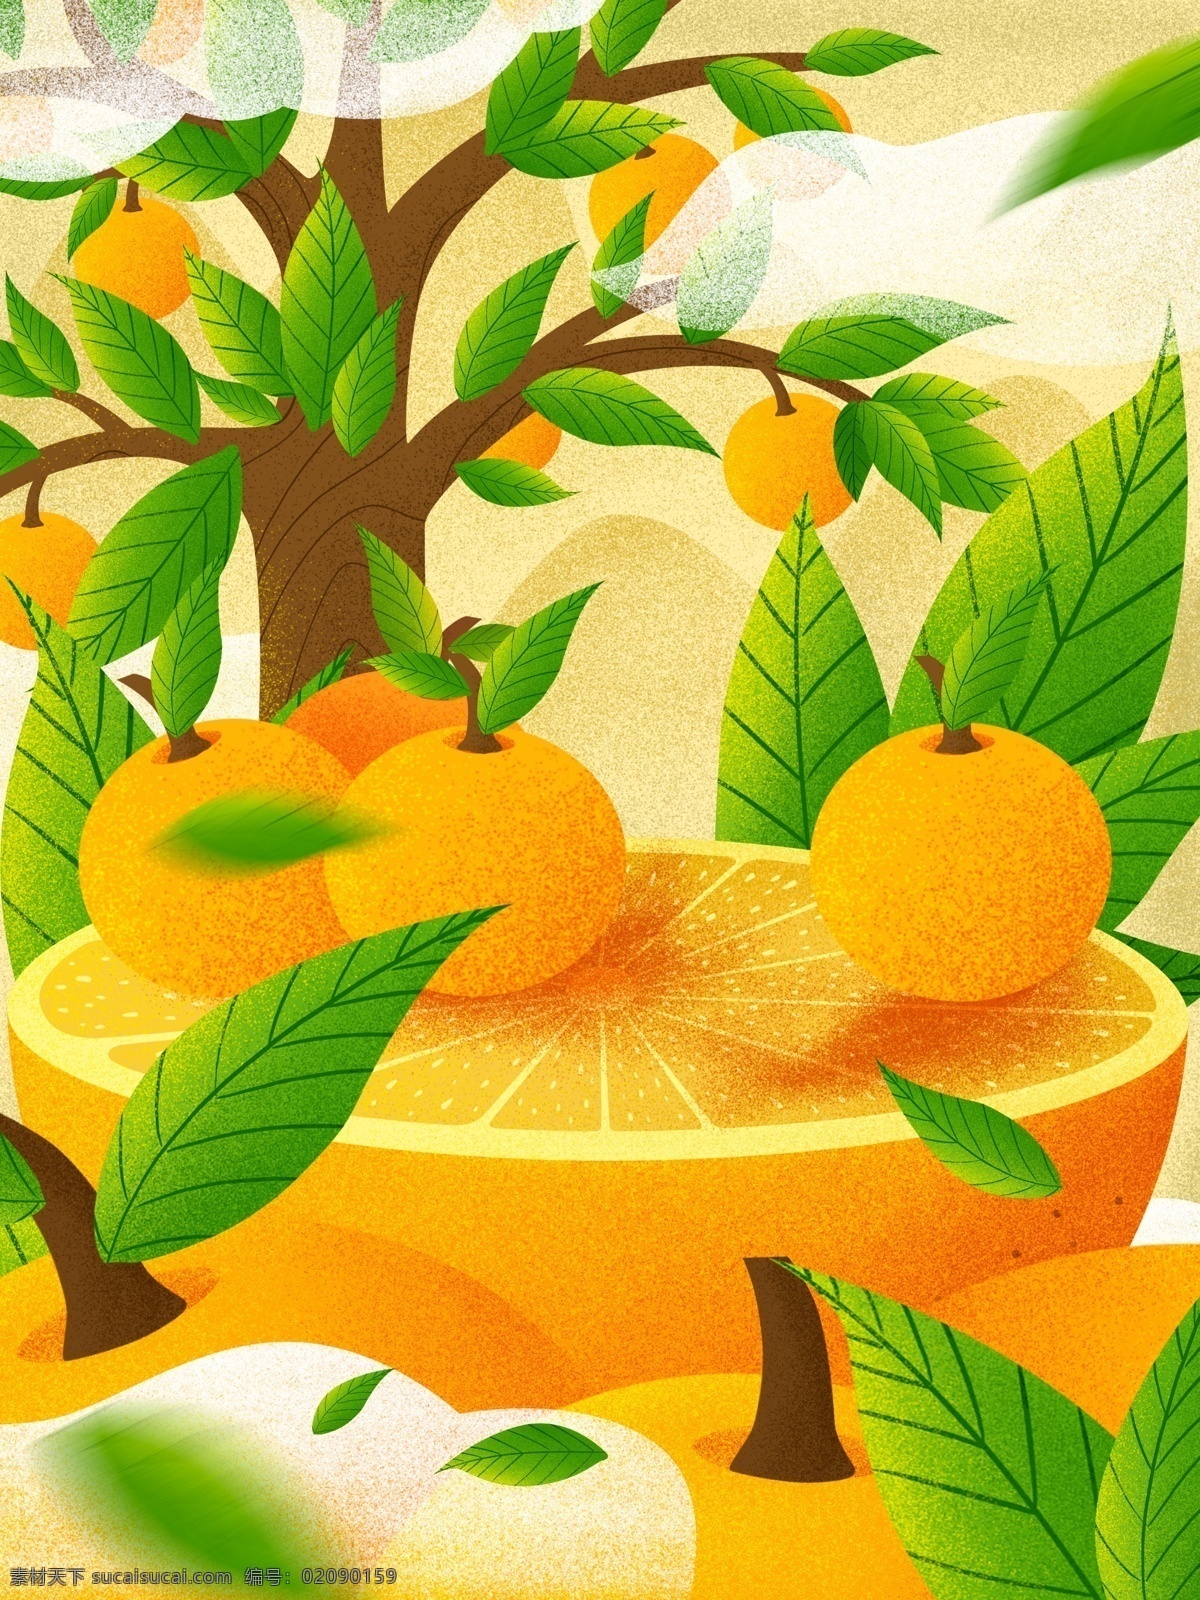 创意 水果 橘子 背景 橘子树 黄色橘子 橘子背景 背景素材 广告背景 创意背景